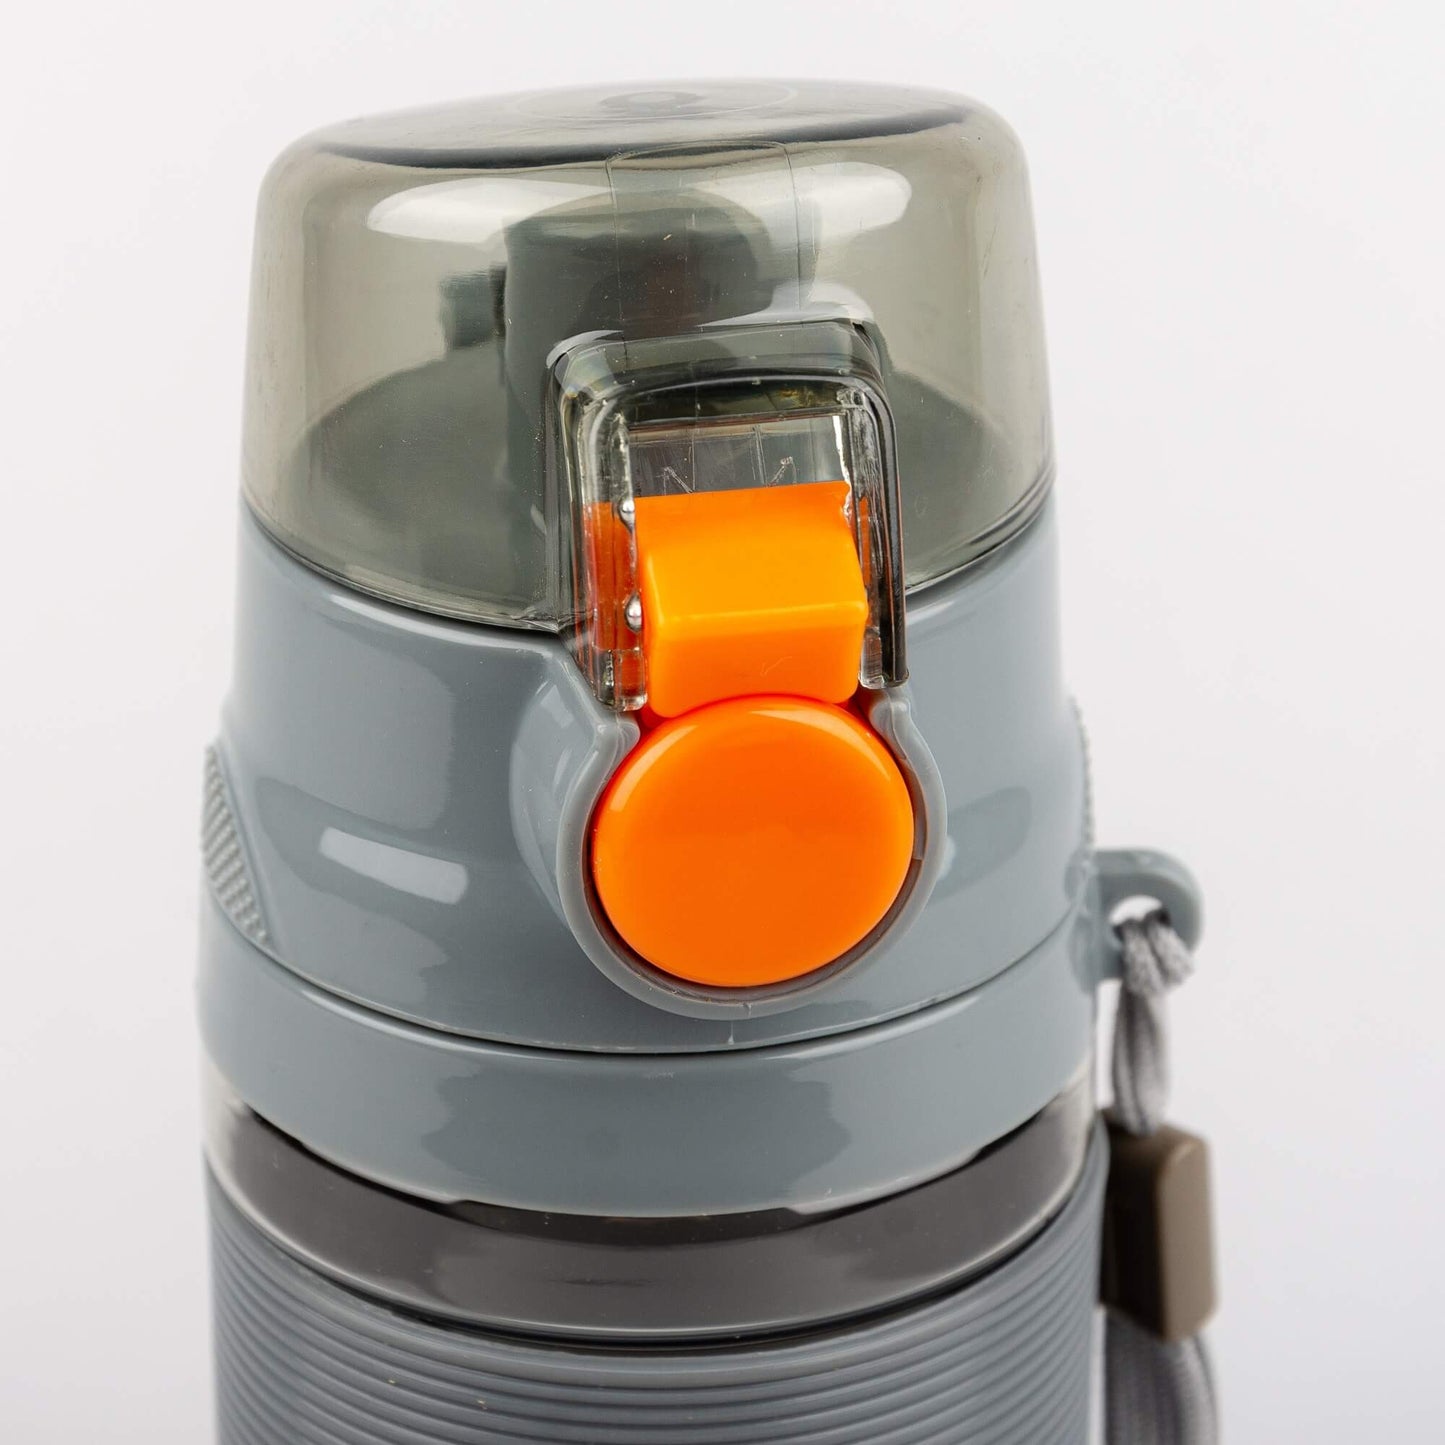 Peak Tritan Tritan Bottle Mid.Grey/Fluorescent Orange